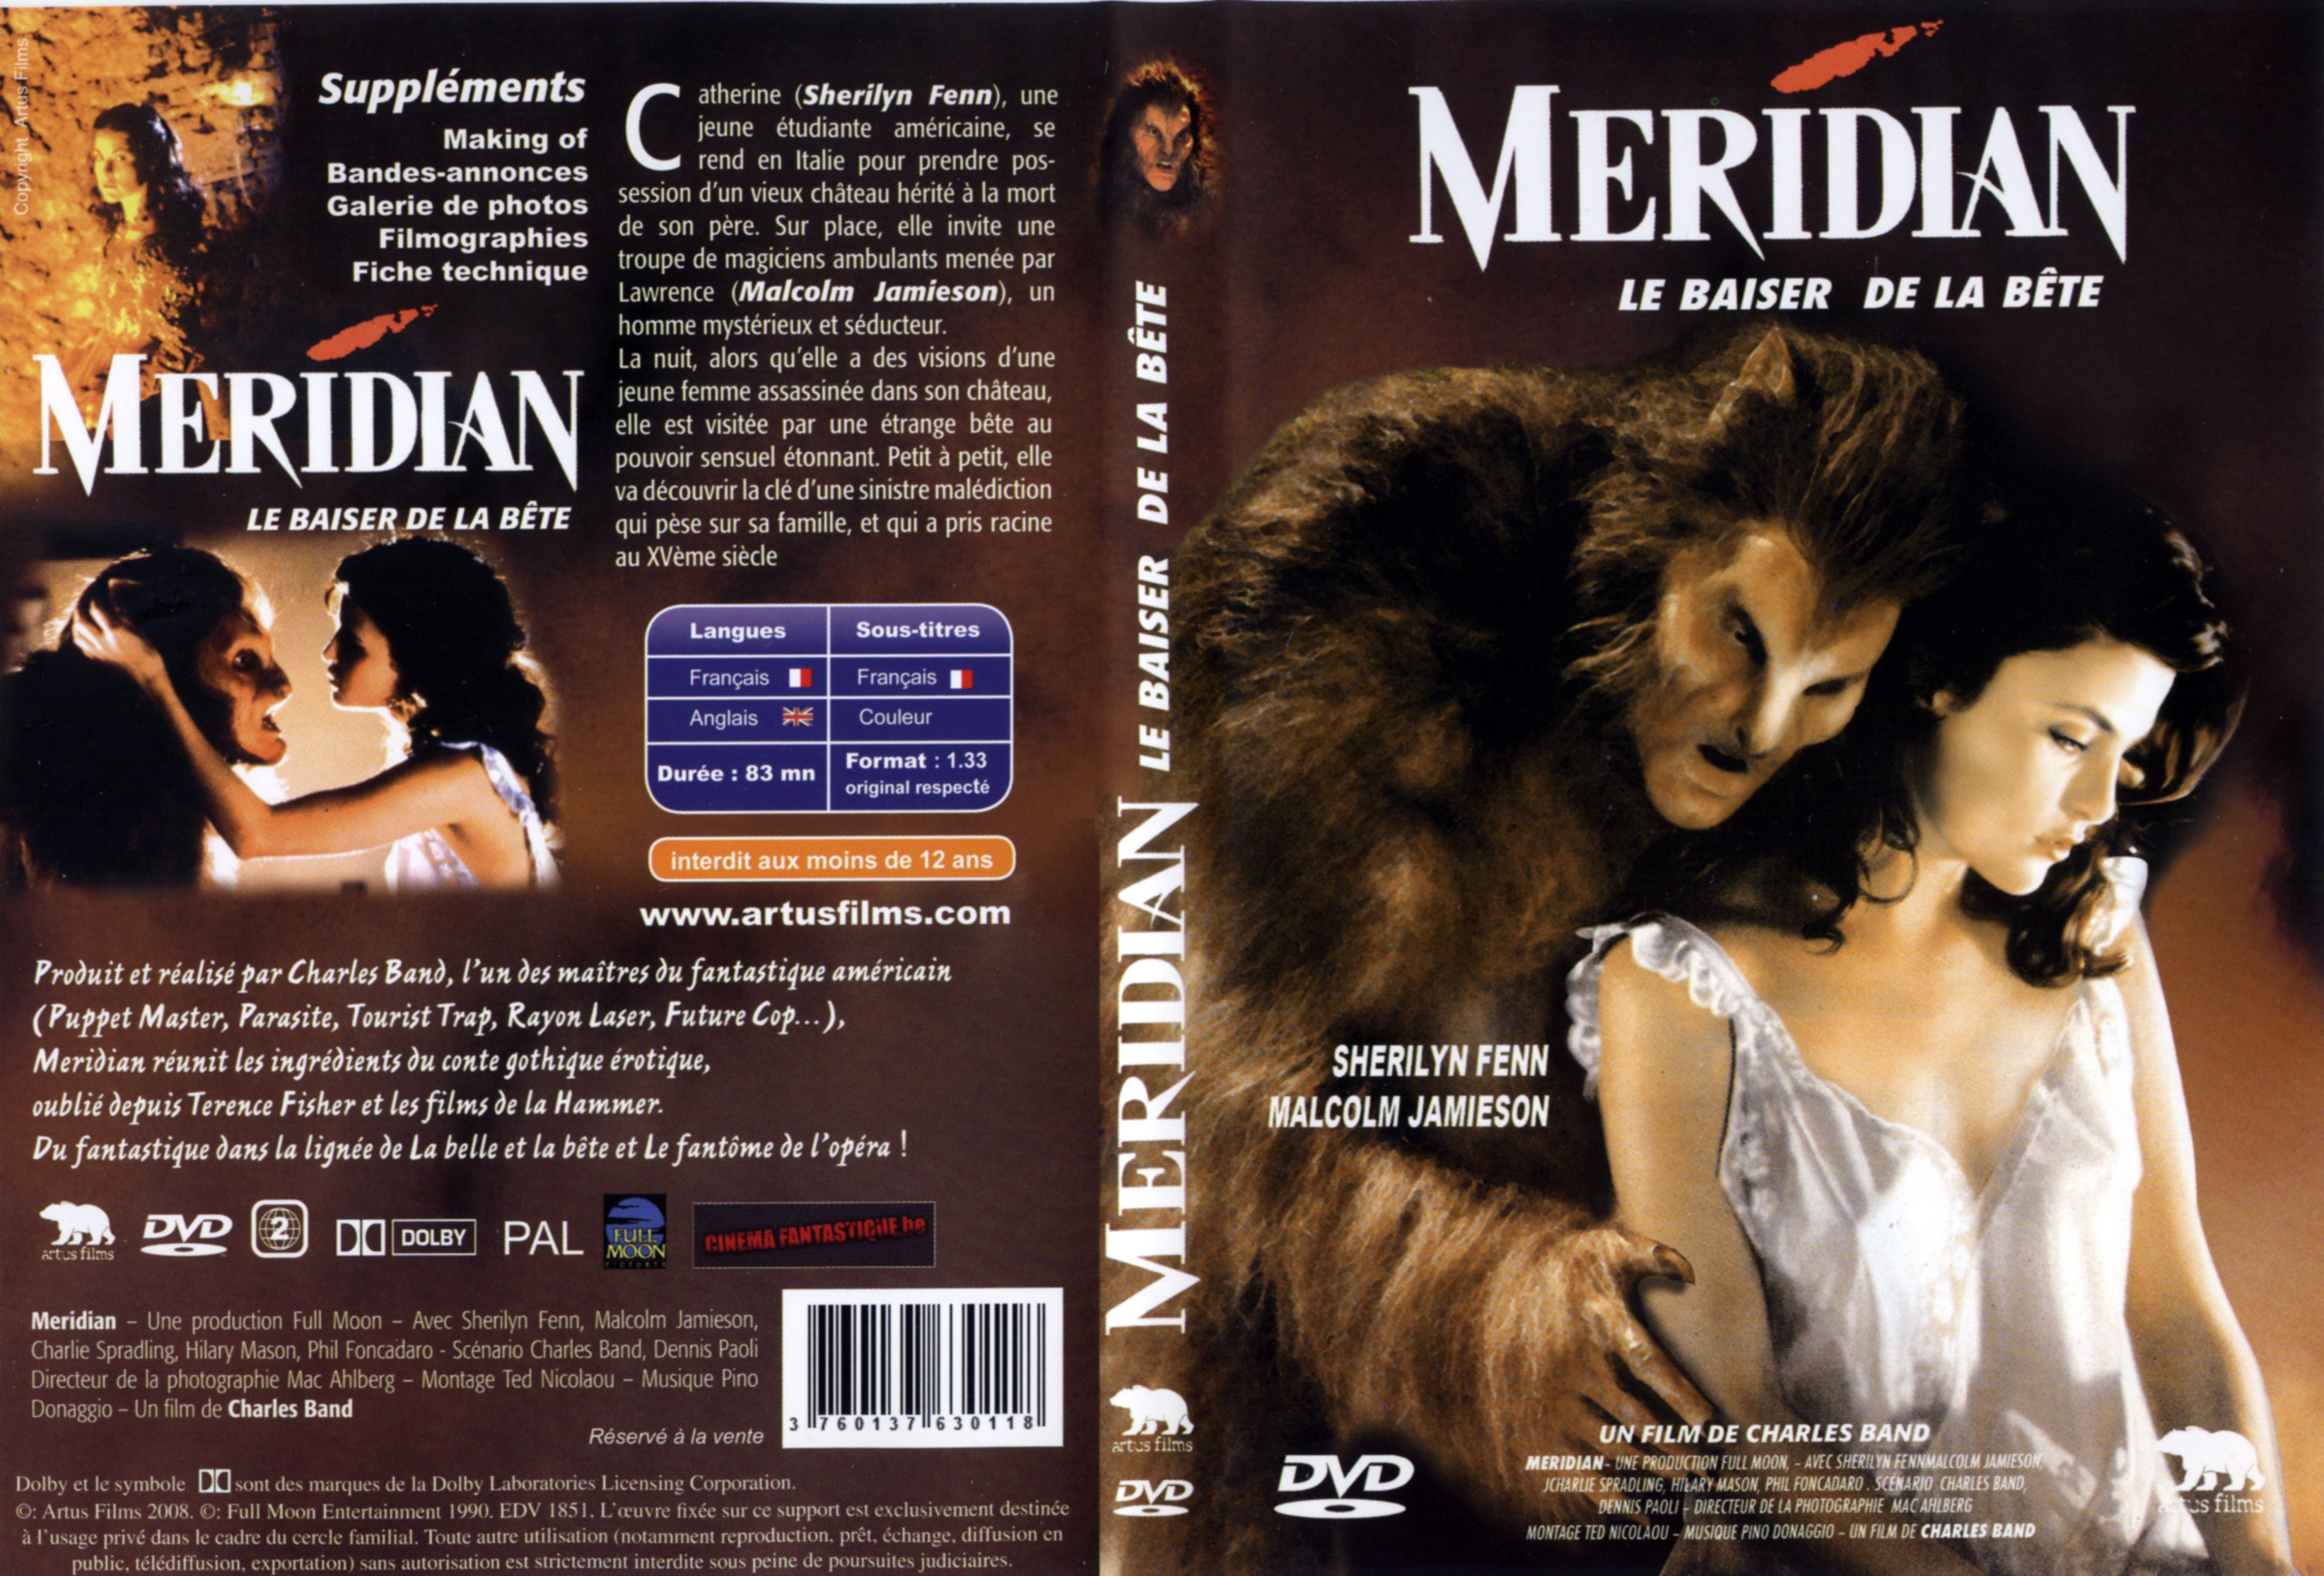 Jaquette DVD Meridian le baiser de la bte